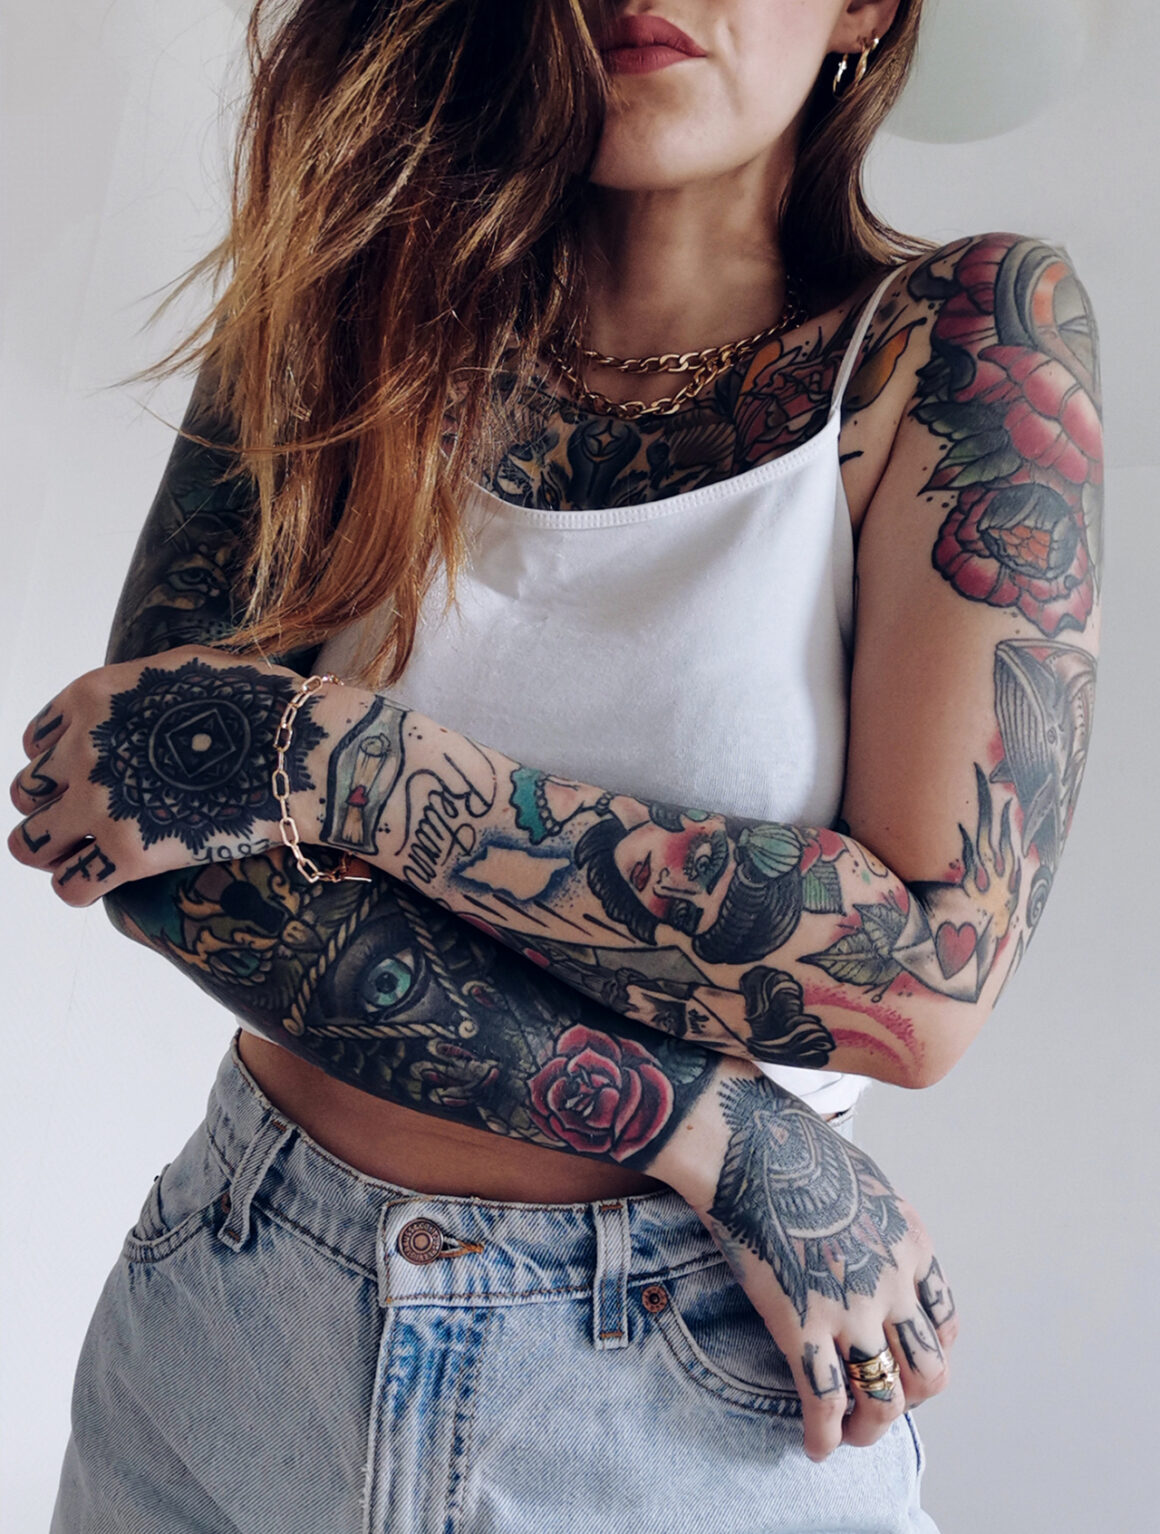 Amela, tattoo model